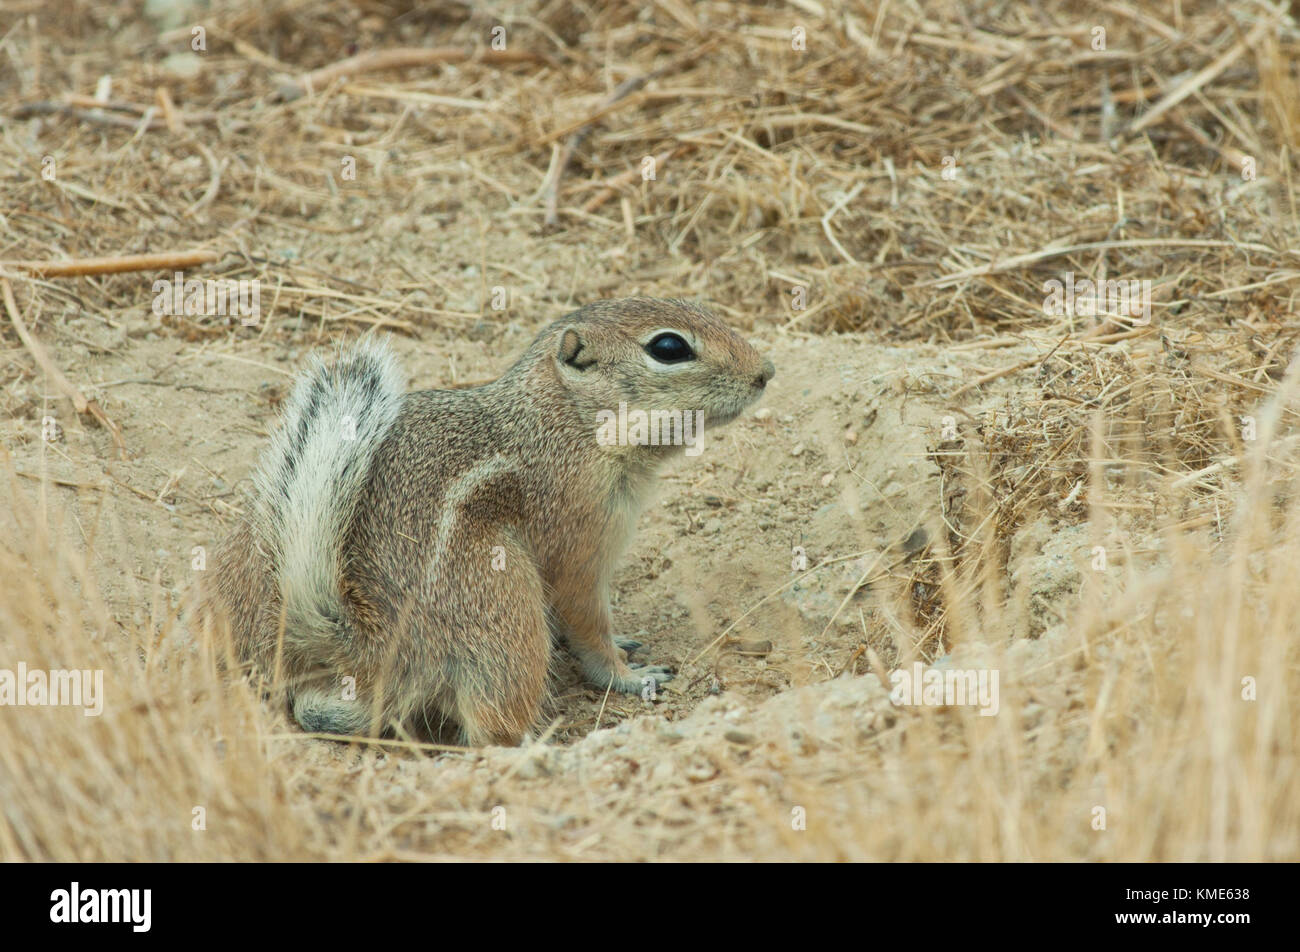 San Joaquin ou écureuil antilope de Nelson (Ammospermophilus nelsoni) en voie de disparition, carrizo plain national monument, California USA Banque D'Images